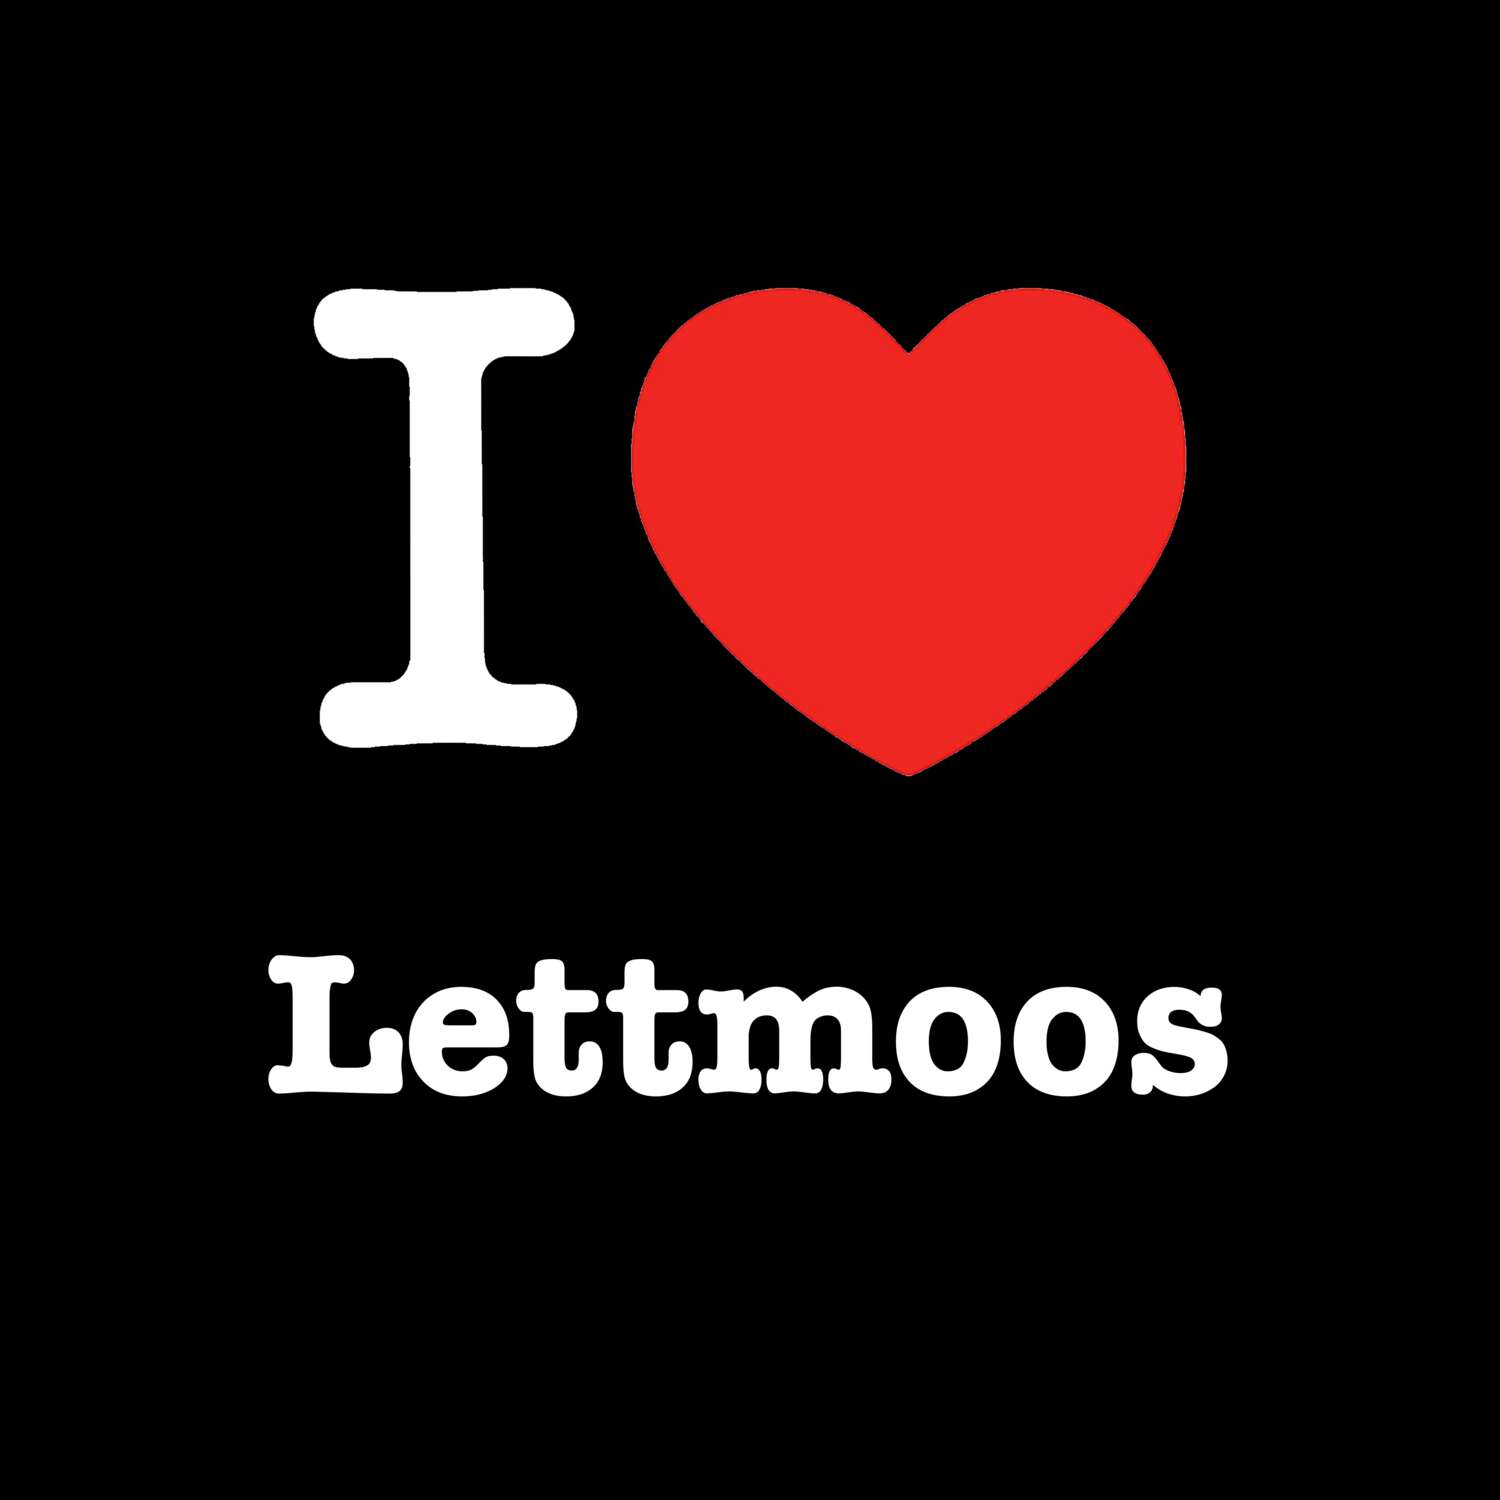 Lettmoos T-Shirt »I love«